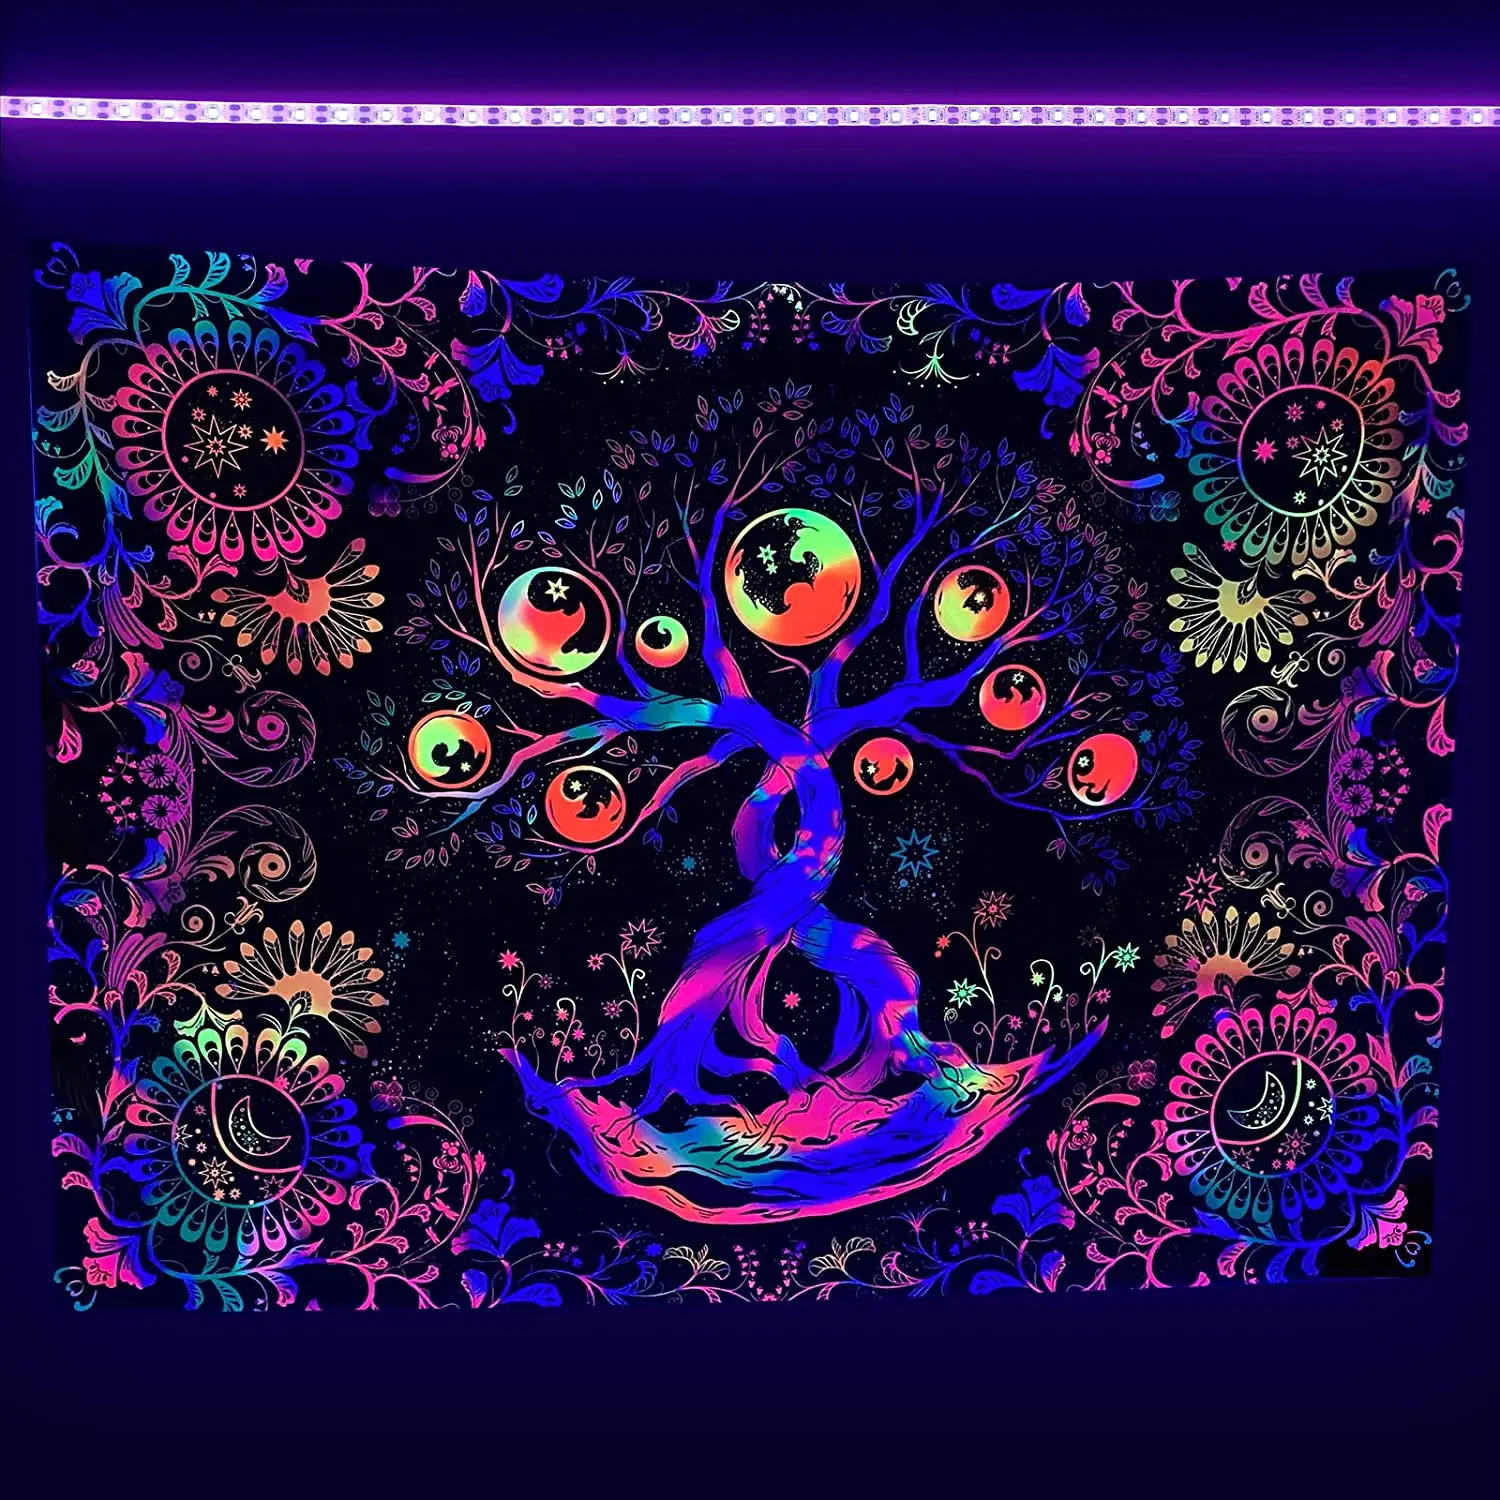 Tenture murale lumière noire Design personnalisé néon psychédélique UV réactif tapisserie murale d'hiver